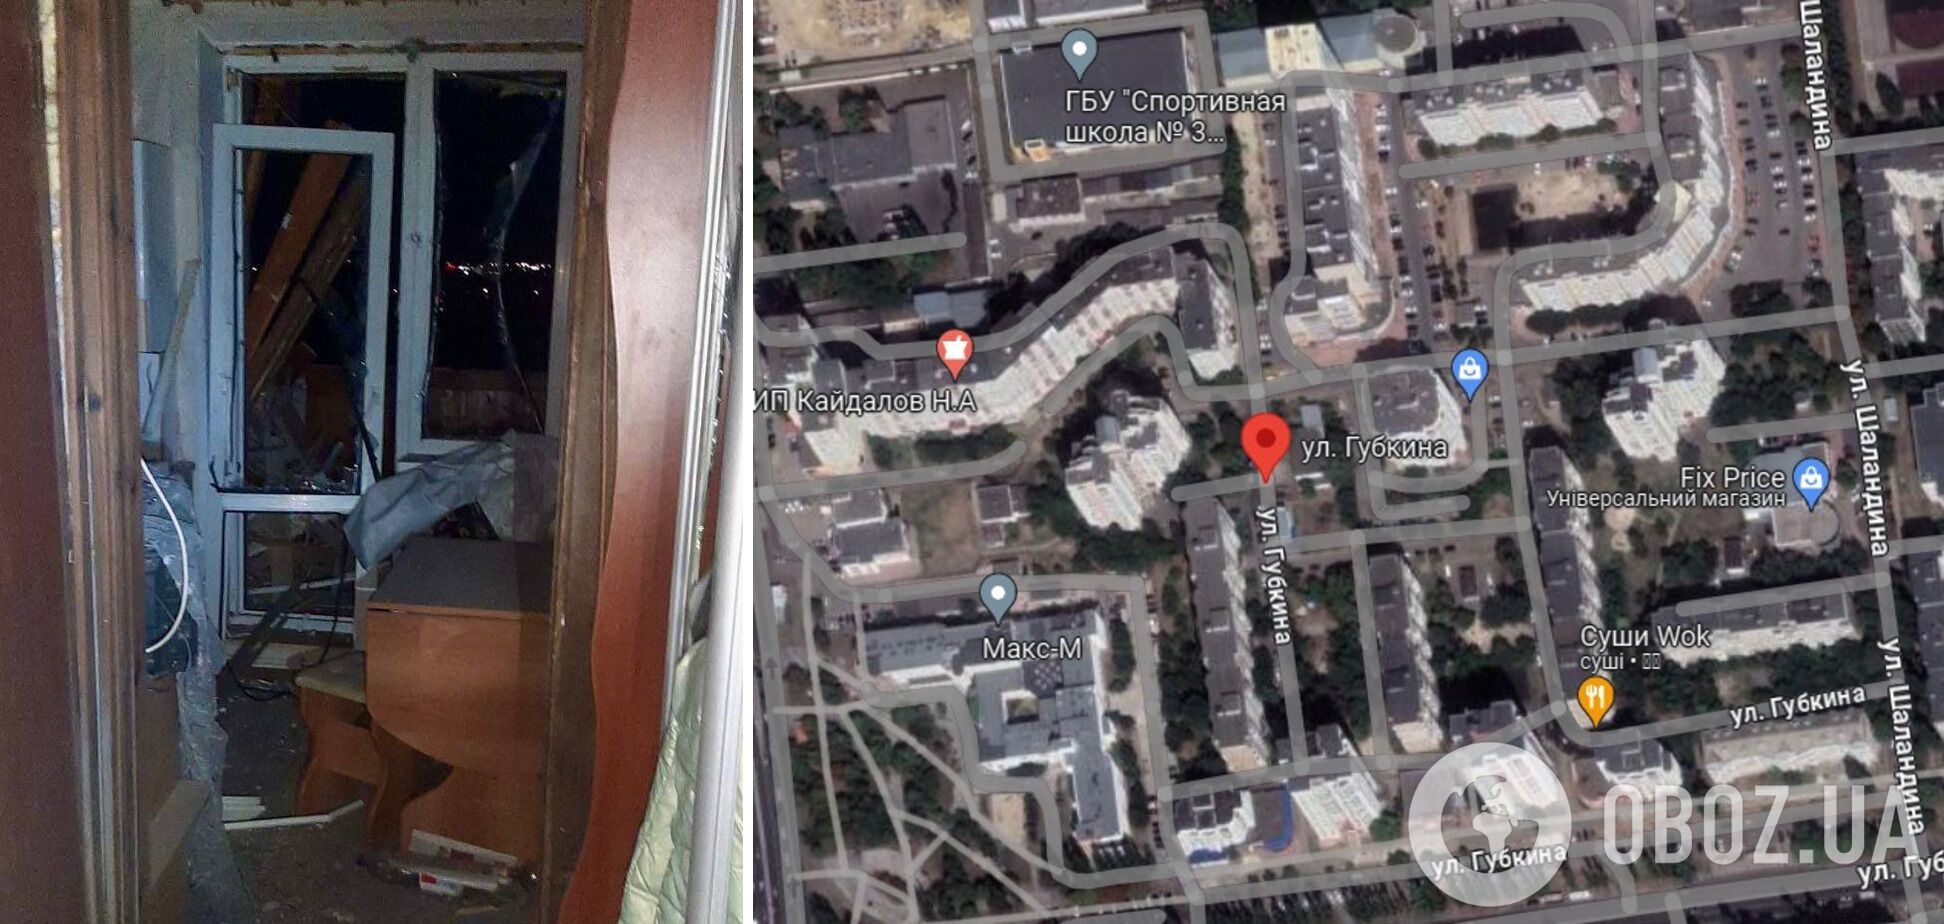 Выла сирена, гремели взрывы: в Белгородской области пожаловались на новую атаку, россияне в истерике. Фото и видео